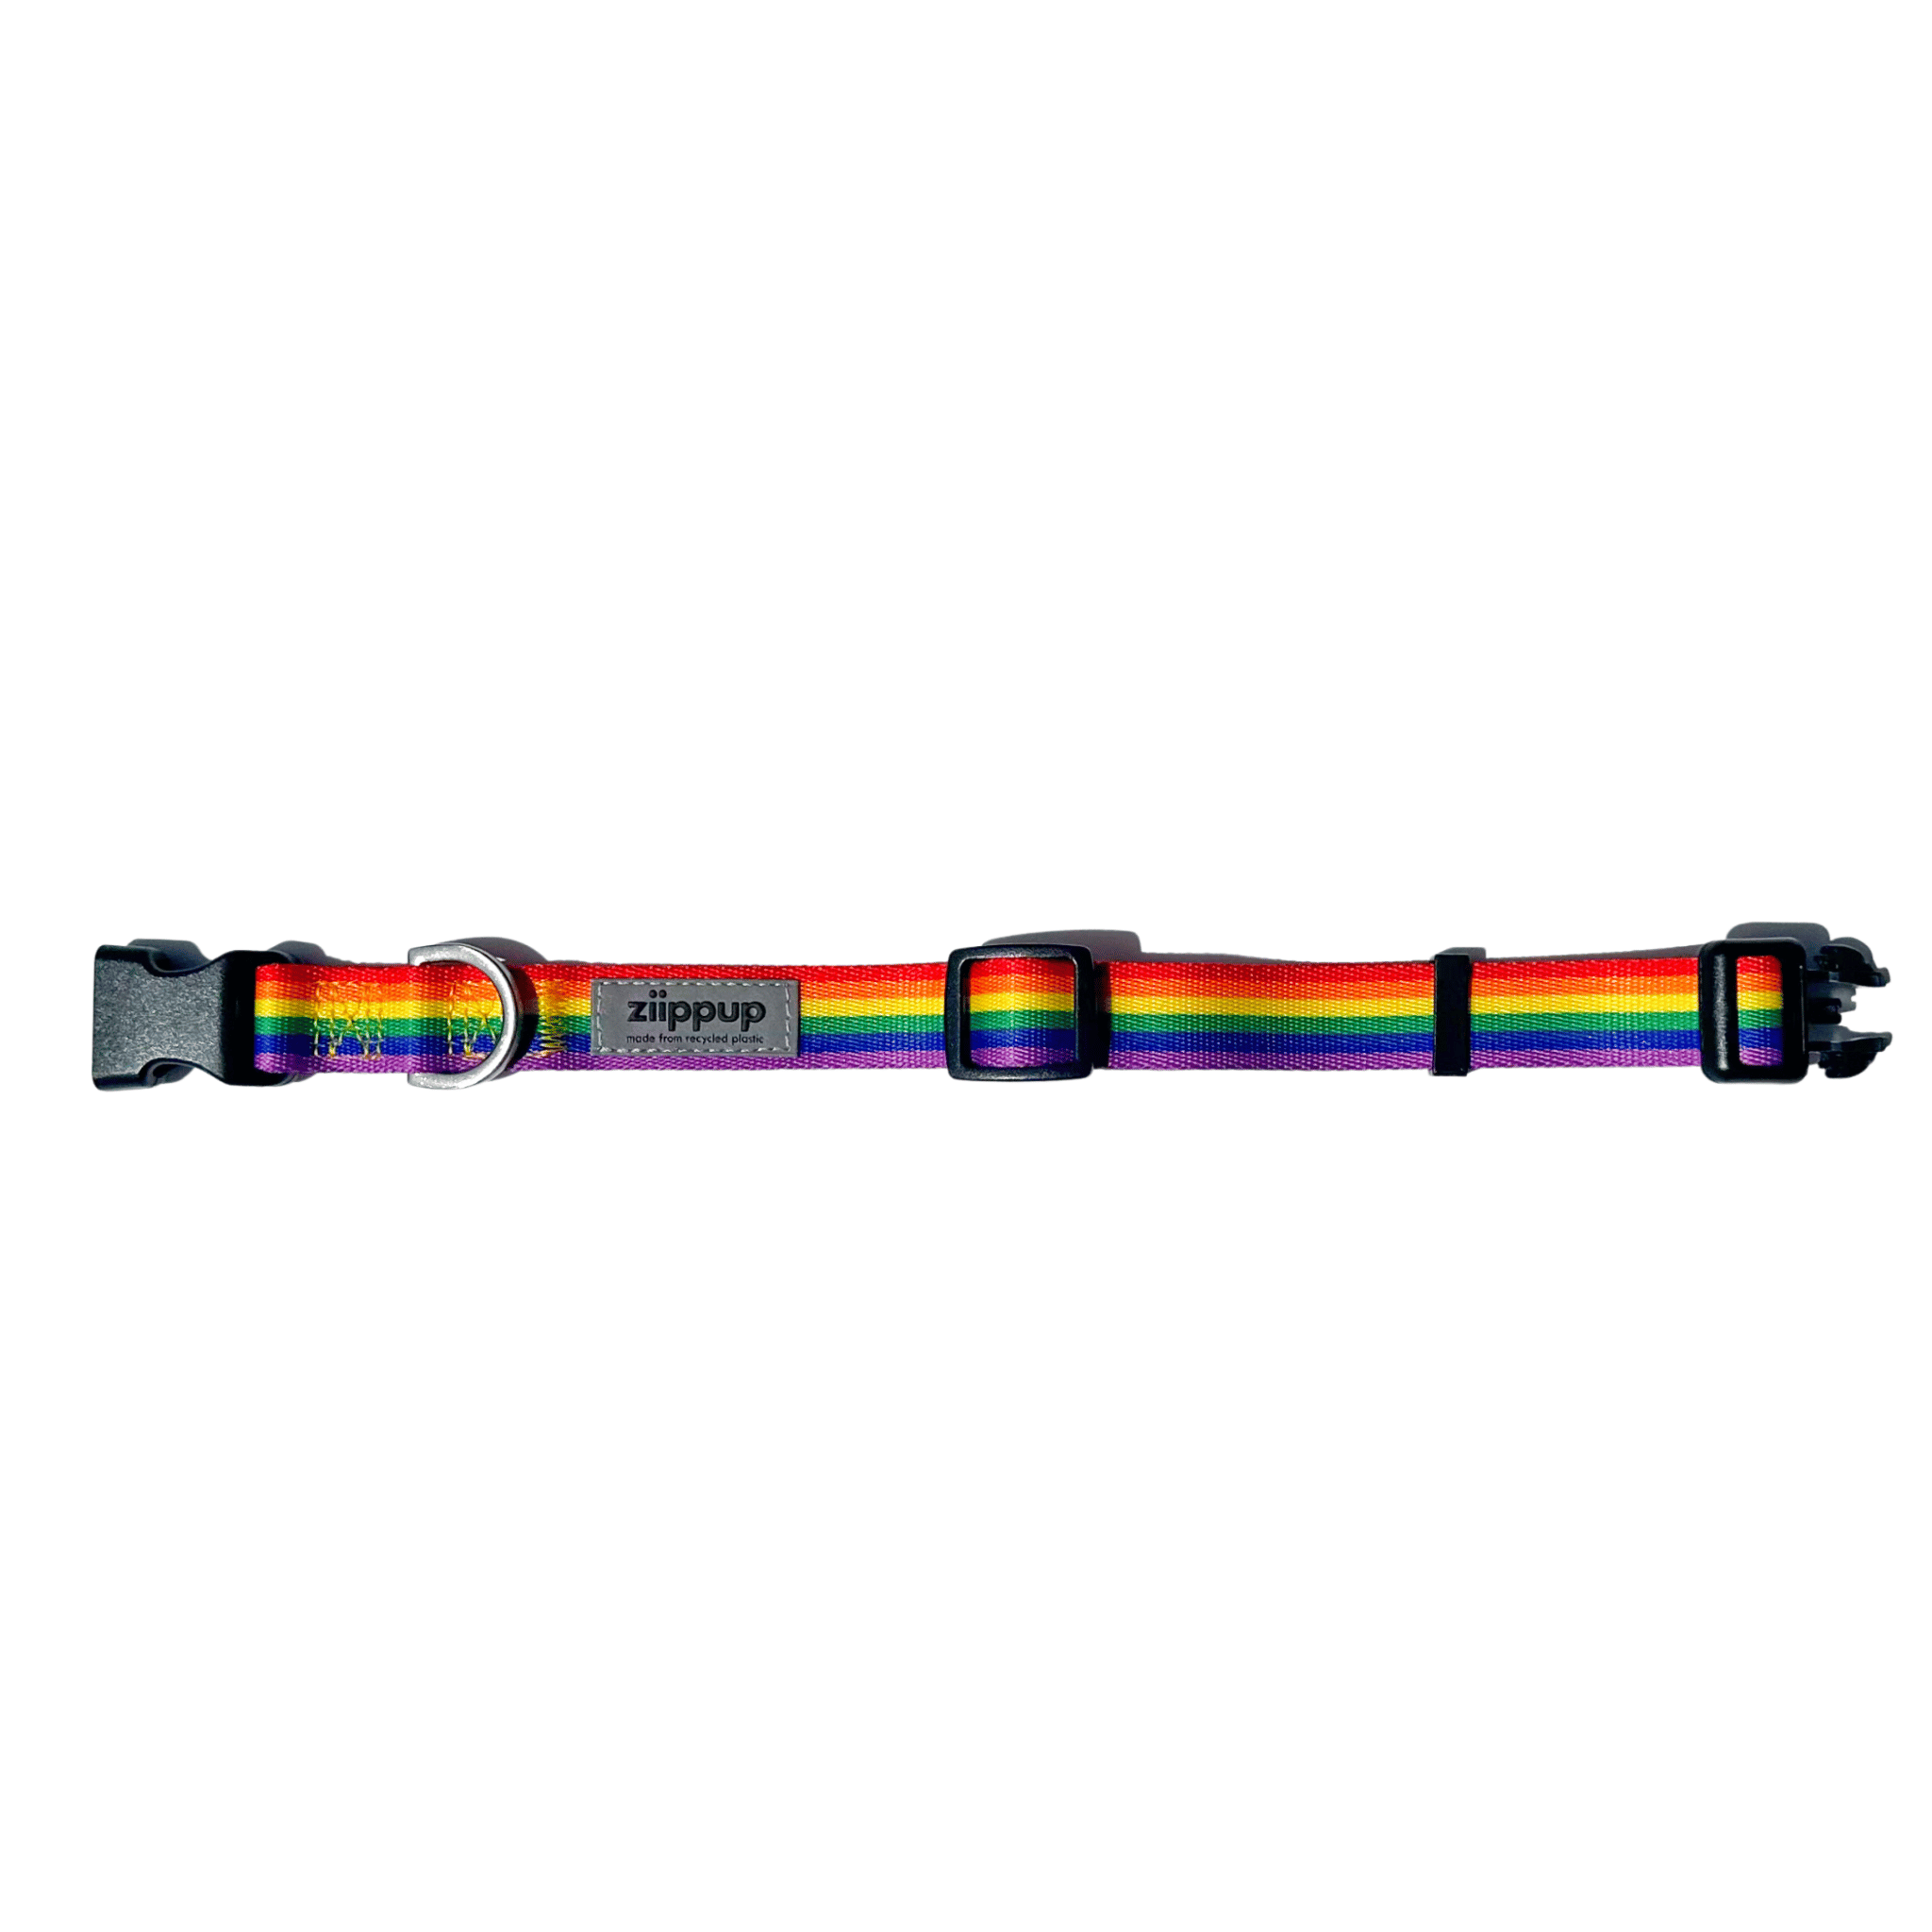 Open rainbow dog collar, ziippup